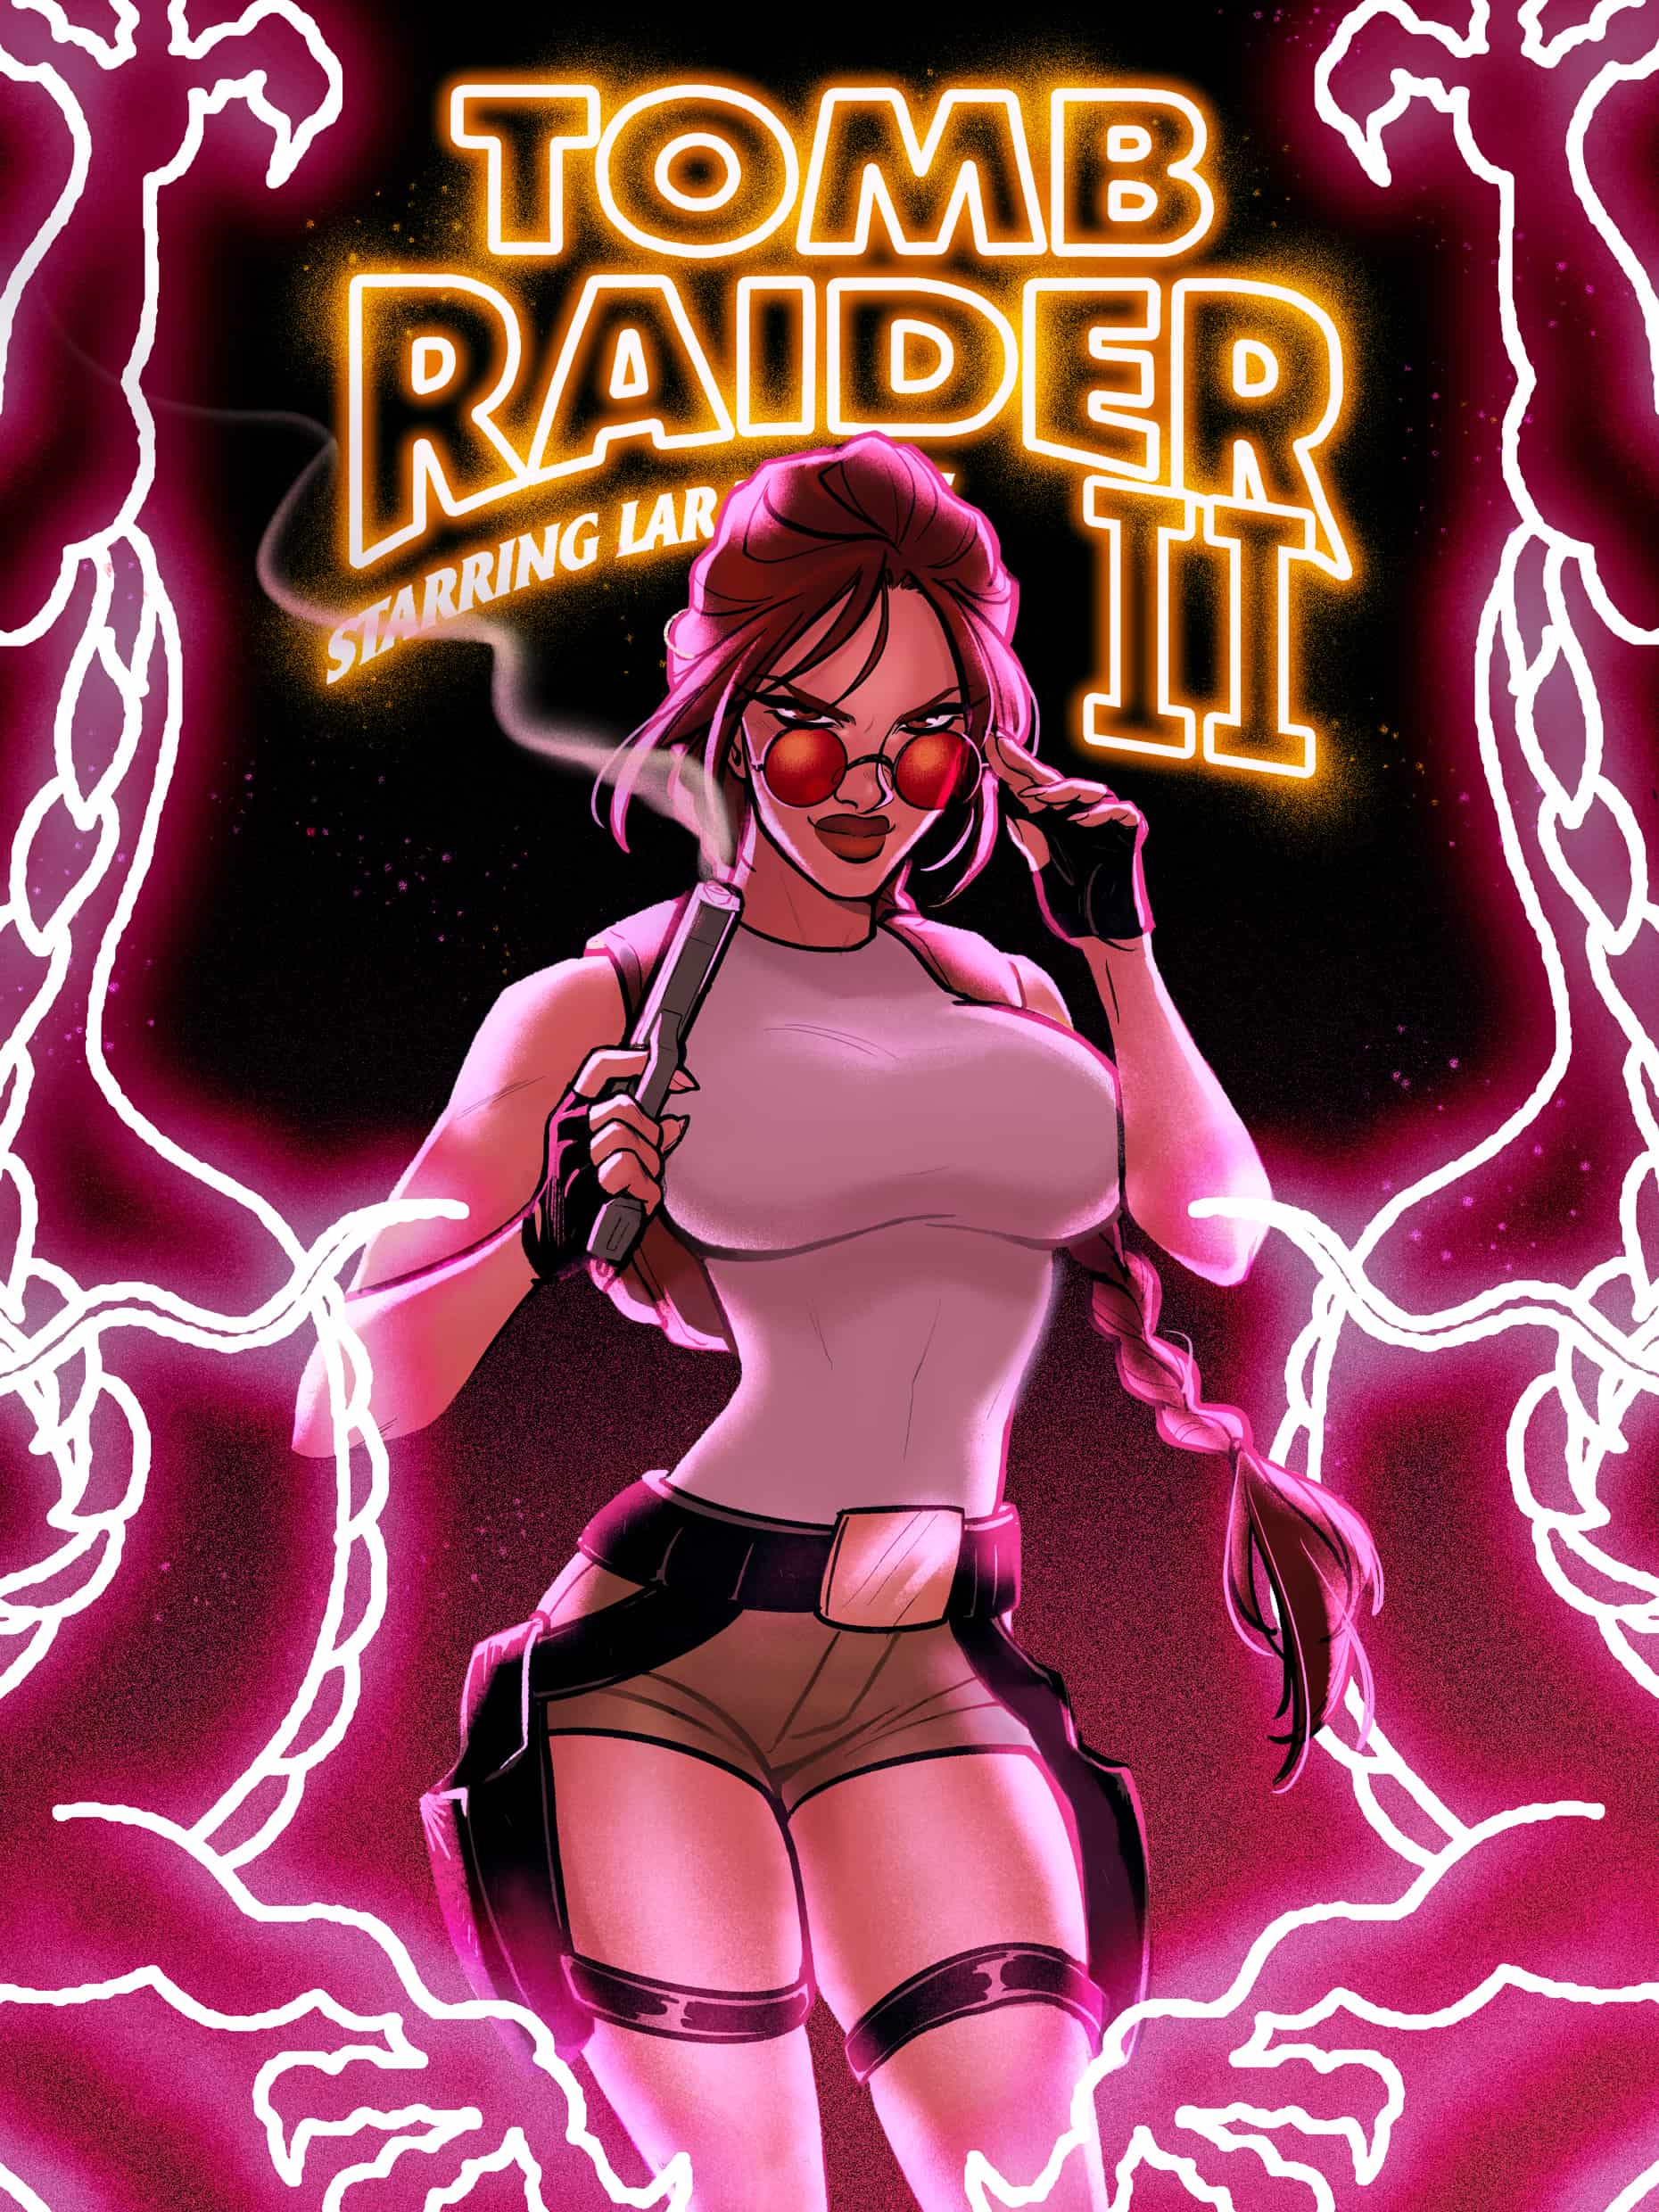 Tomb Raider II art by Babs Tarr